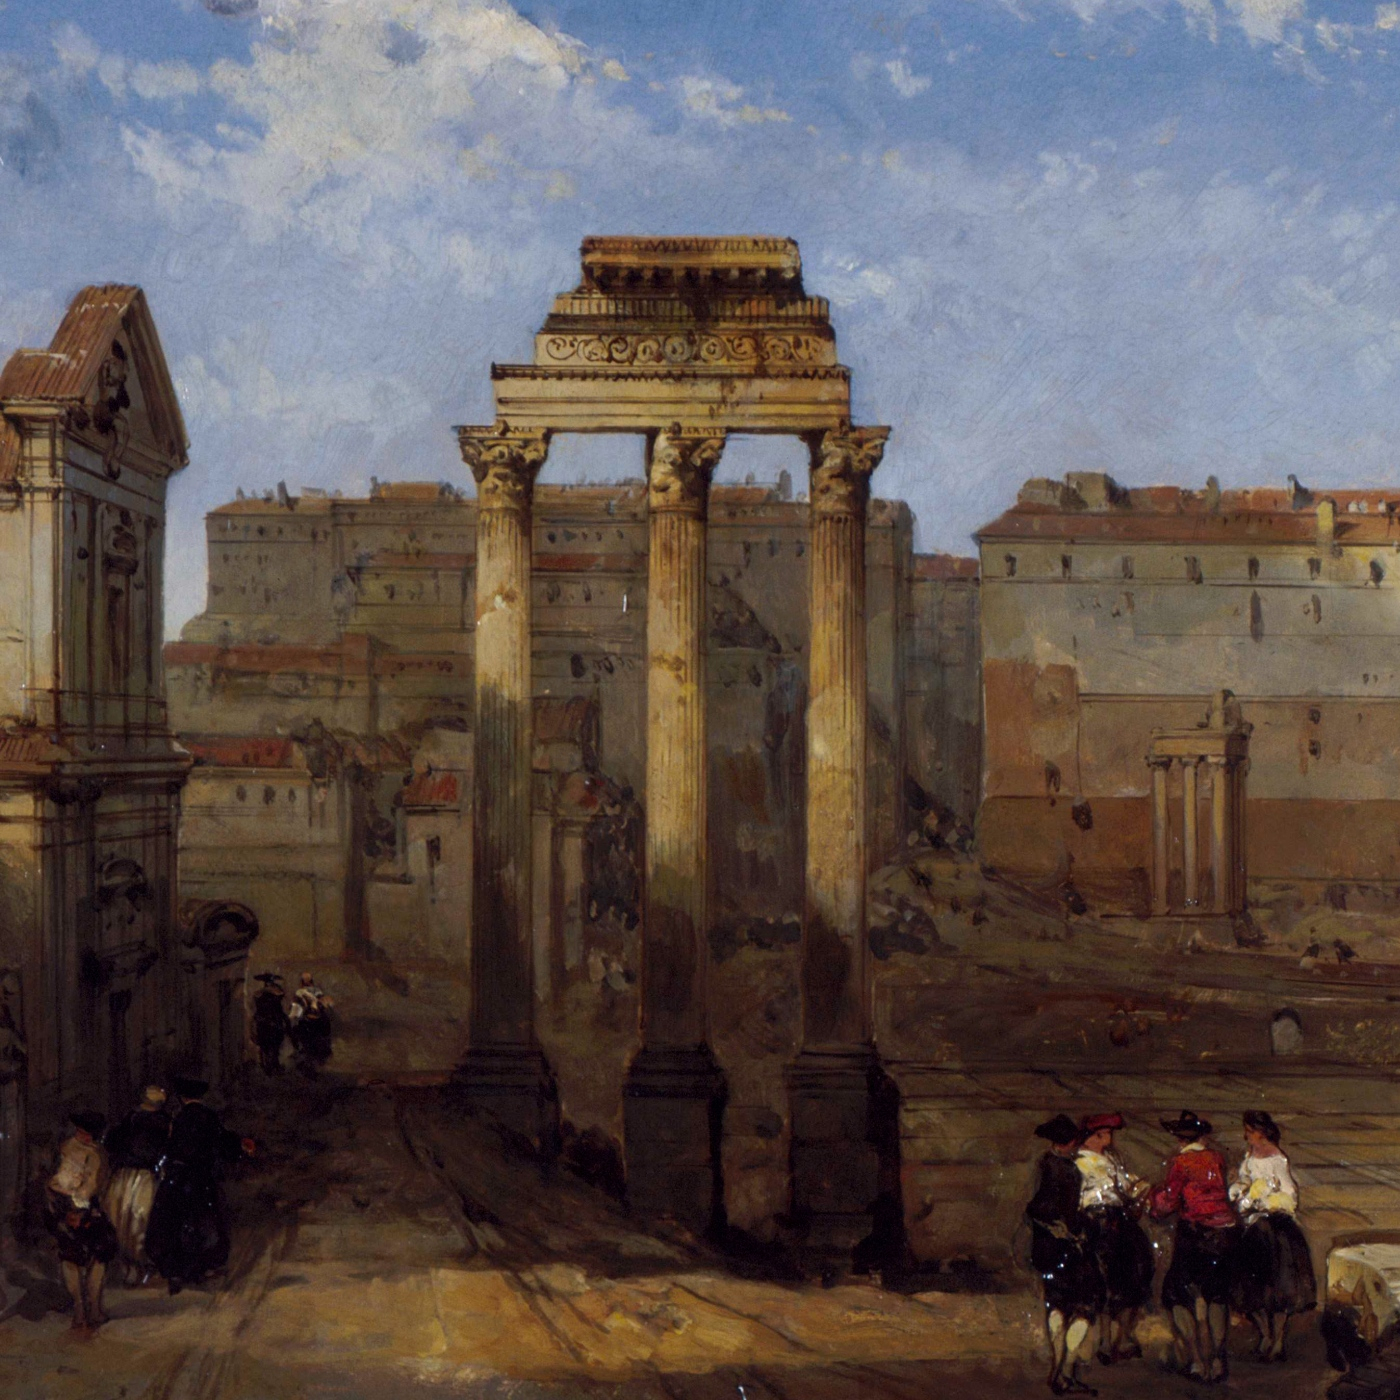 El foro de César, la gran obra romana de la que solo quedan tres columnas